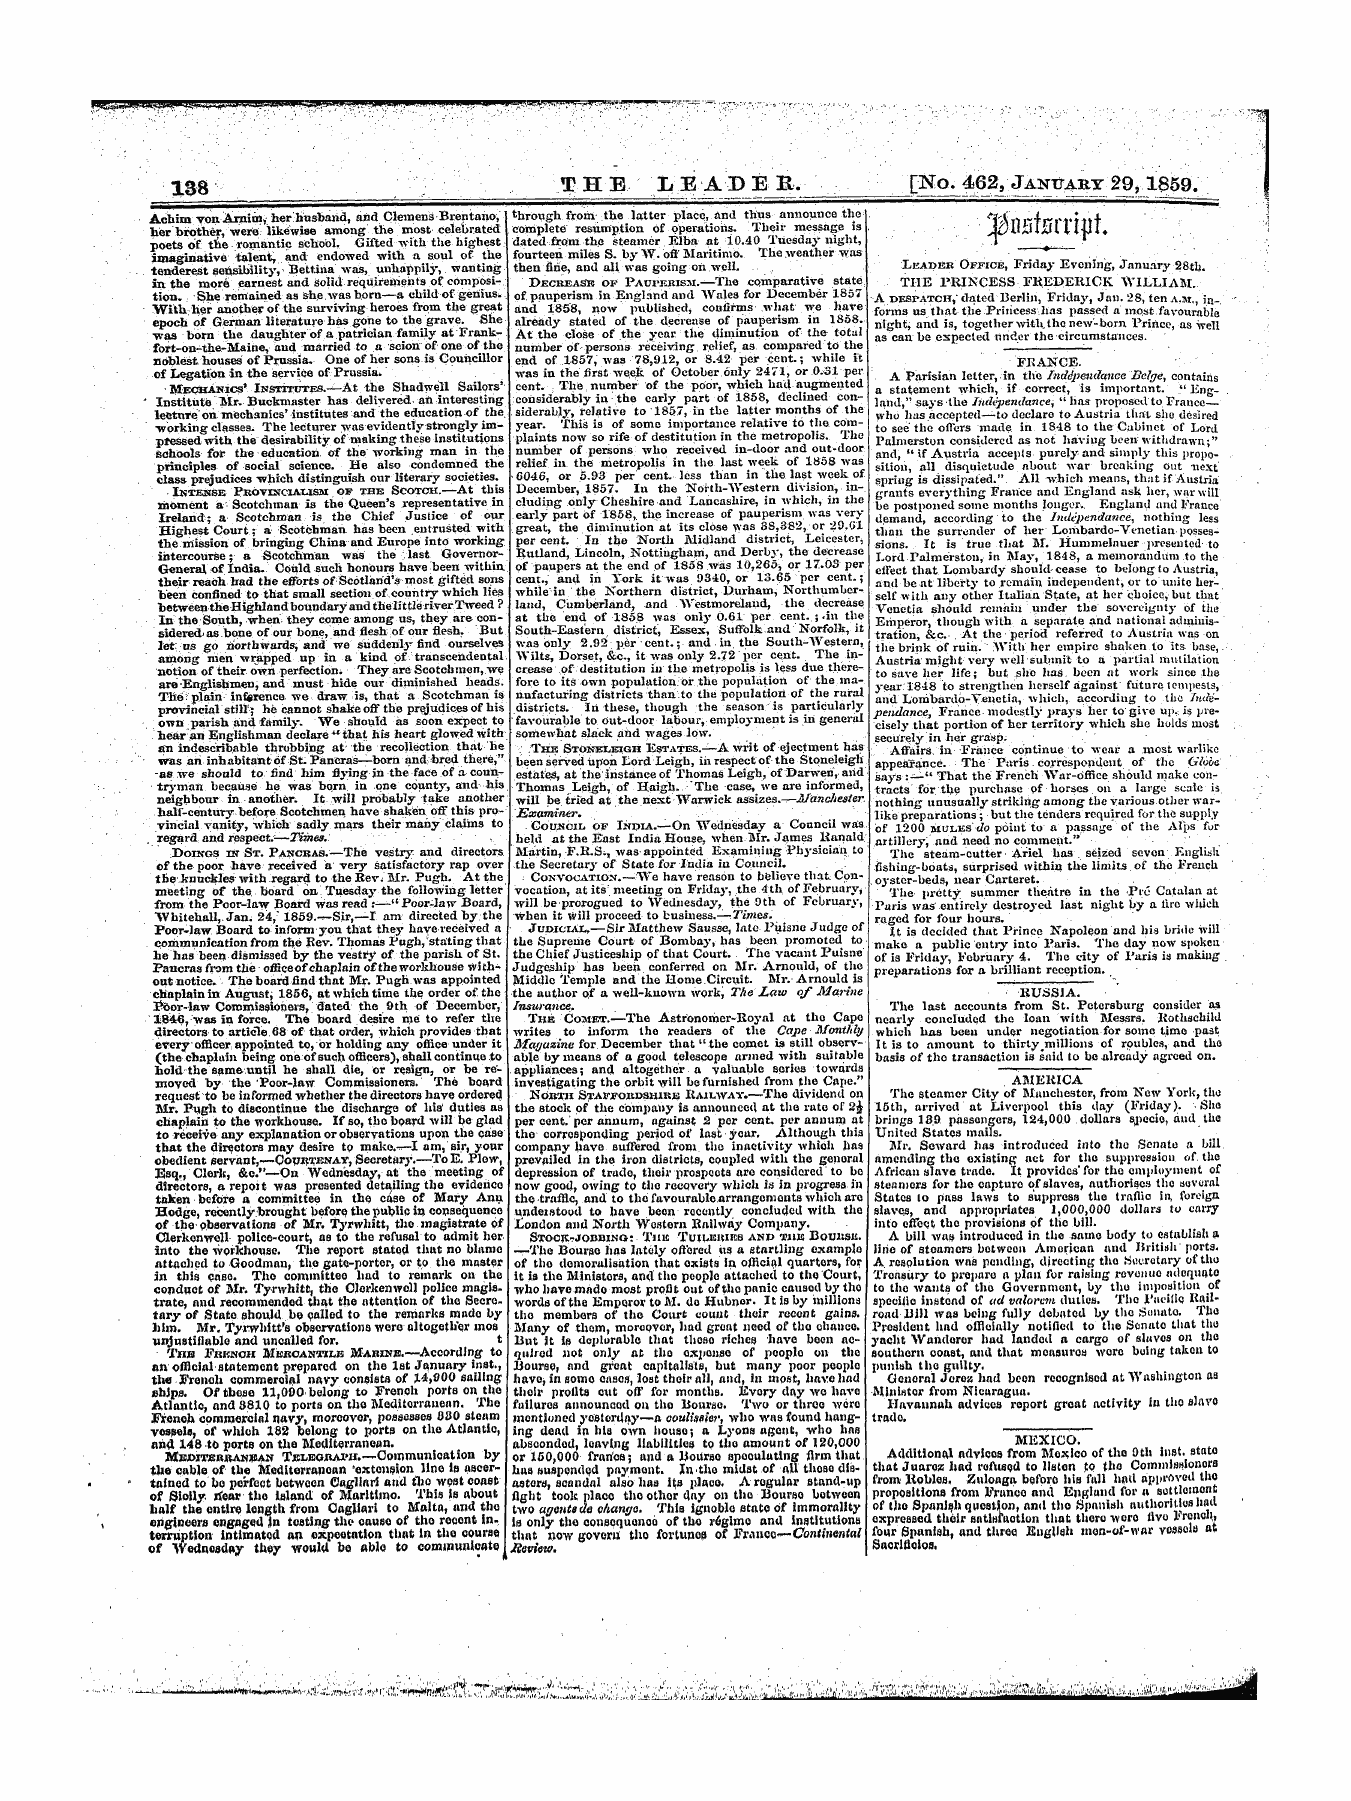 Leader (1850-1860): jS F Y, 1st edition - ^,V± T * « Jc/Oiujjrrt-Pt /\ *¦* ¦ ¦ ..